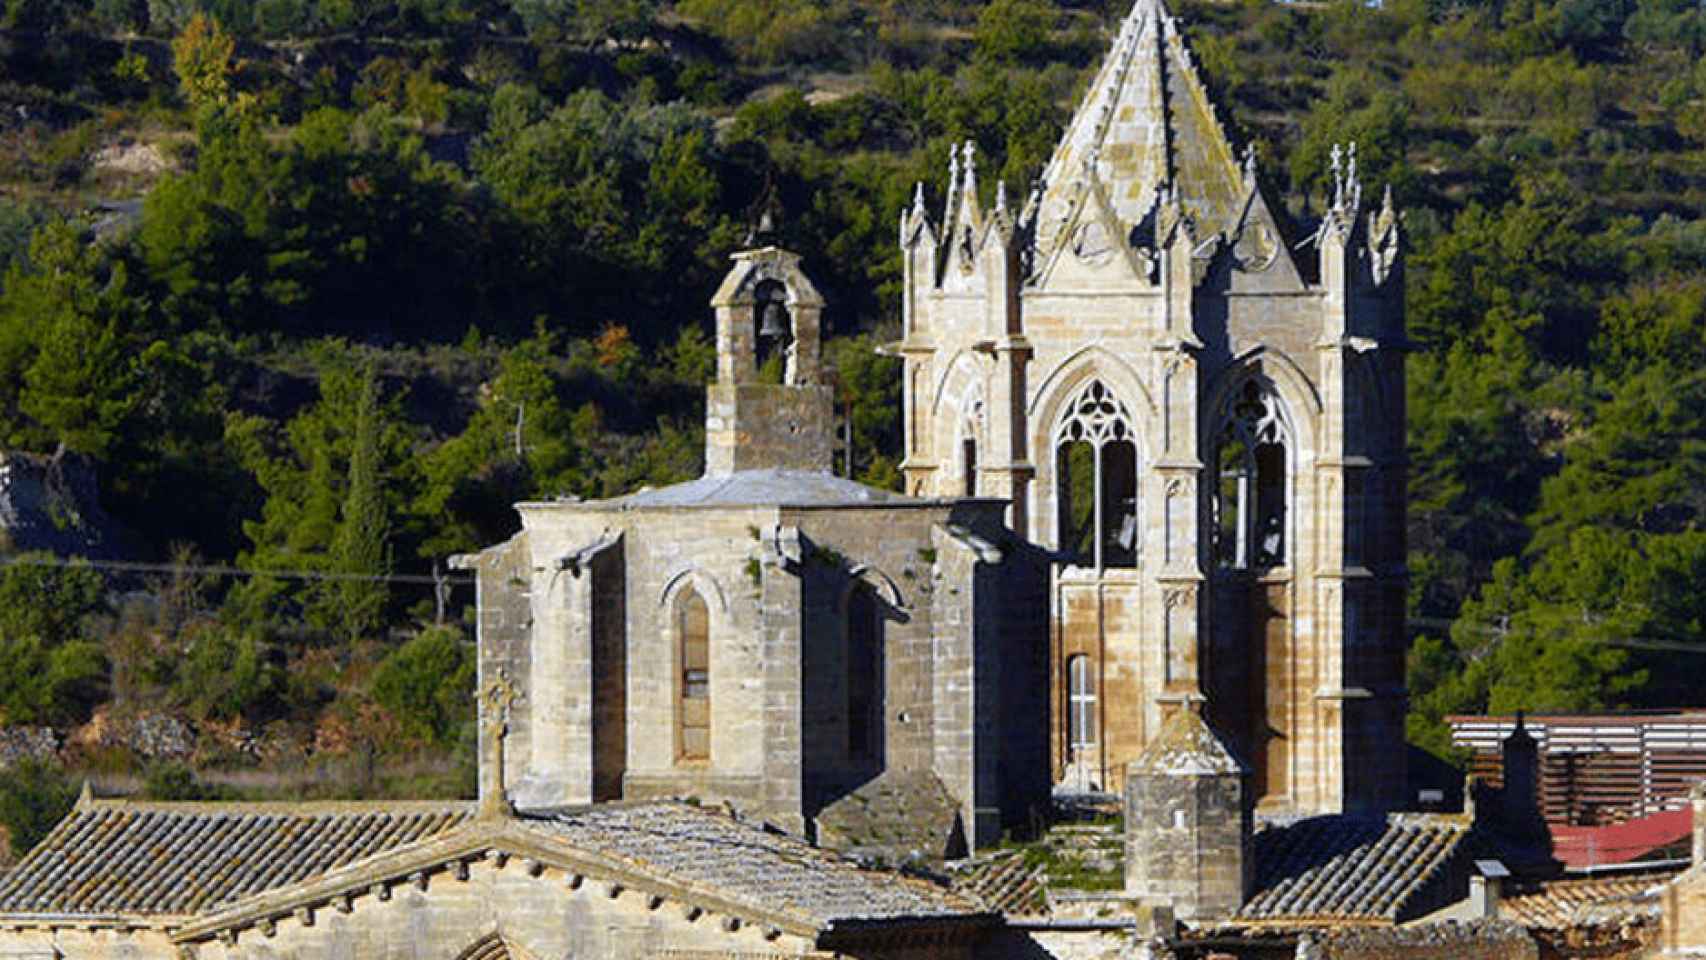 Monasterio de Vallbona de les Monges, del que los ladrones se han llevado dos pilas bautismales y un arco de piedra / CG